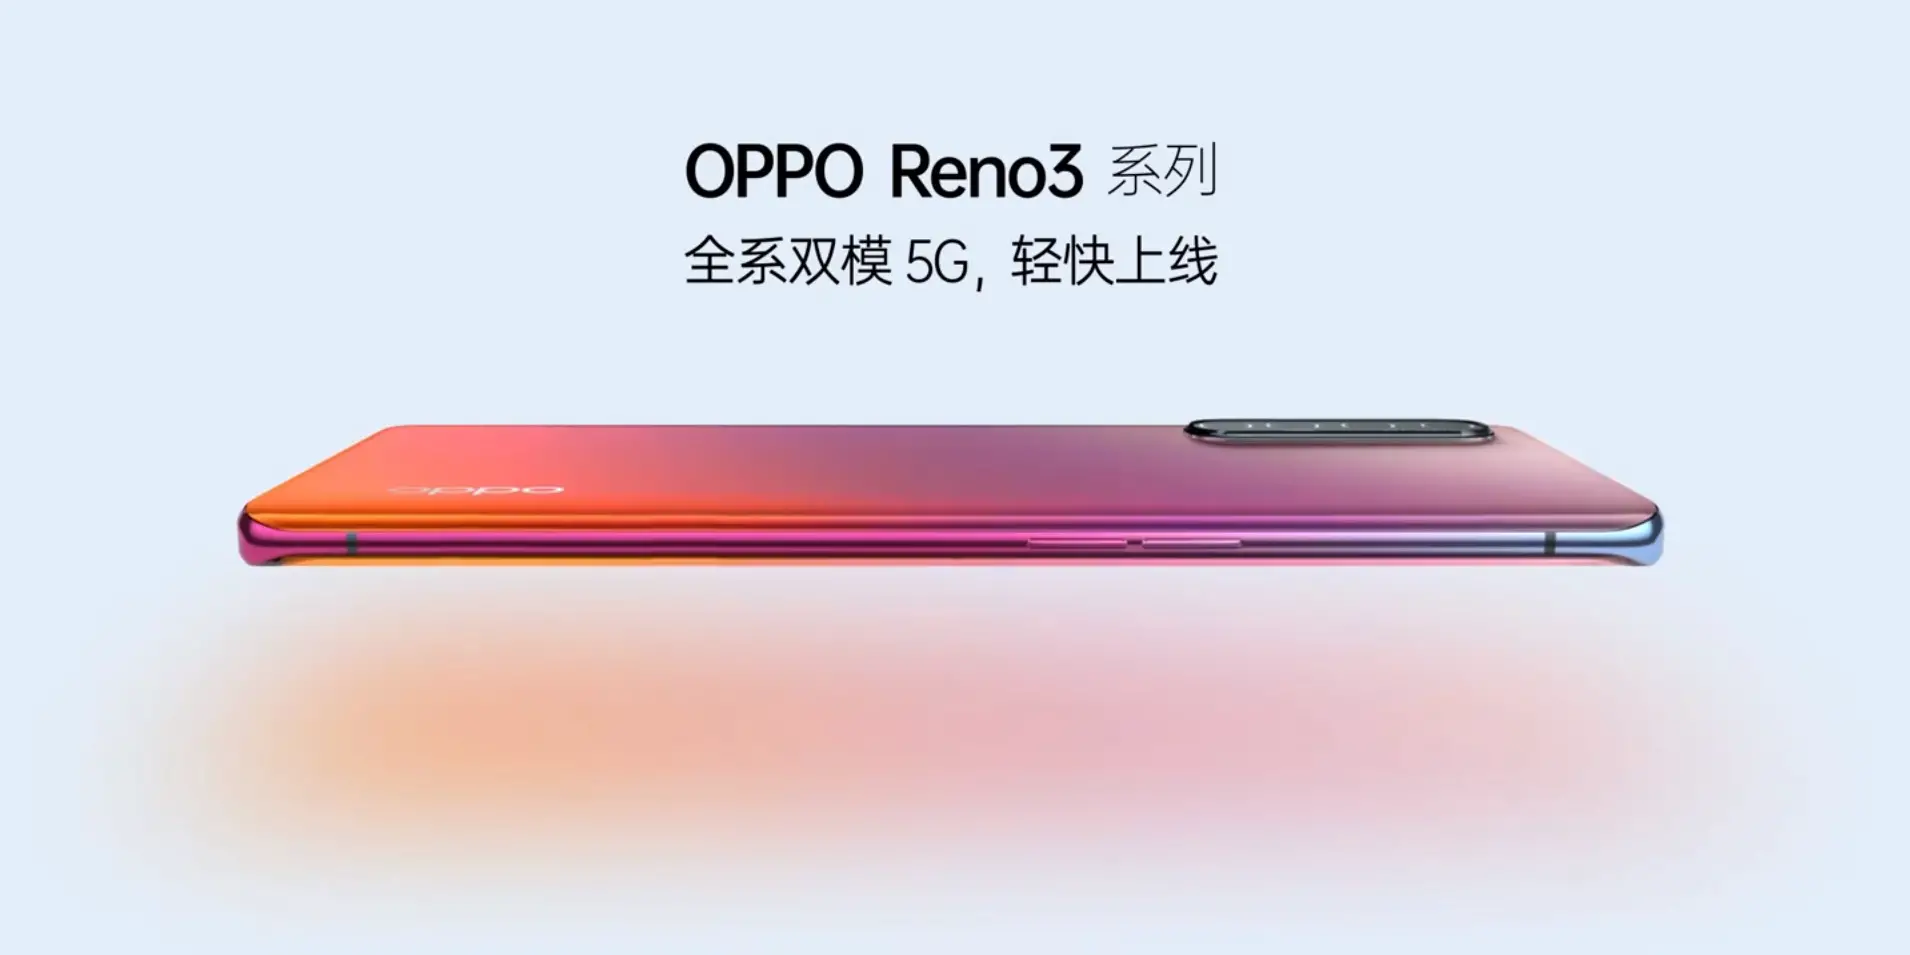 Oppo Reno3 Pro